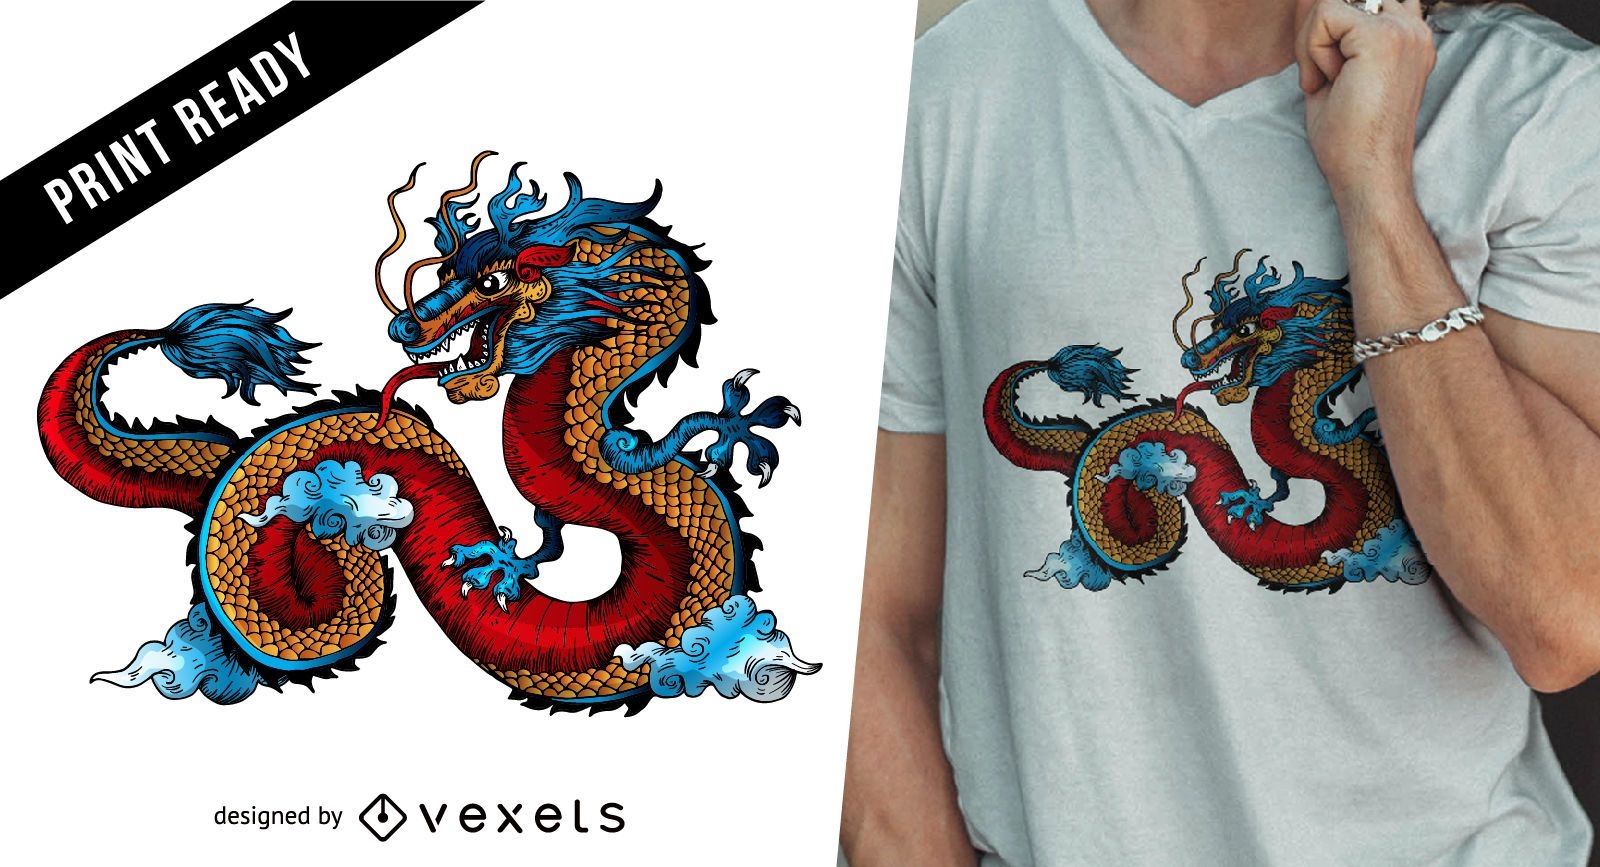 Chinesisches Drachent-shirt Design